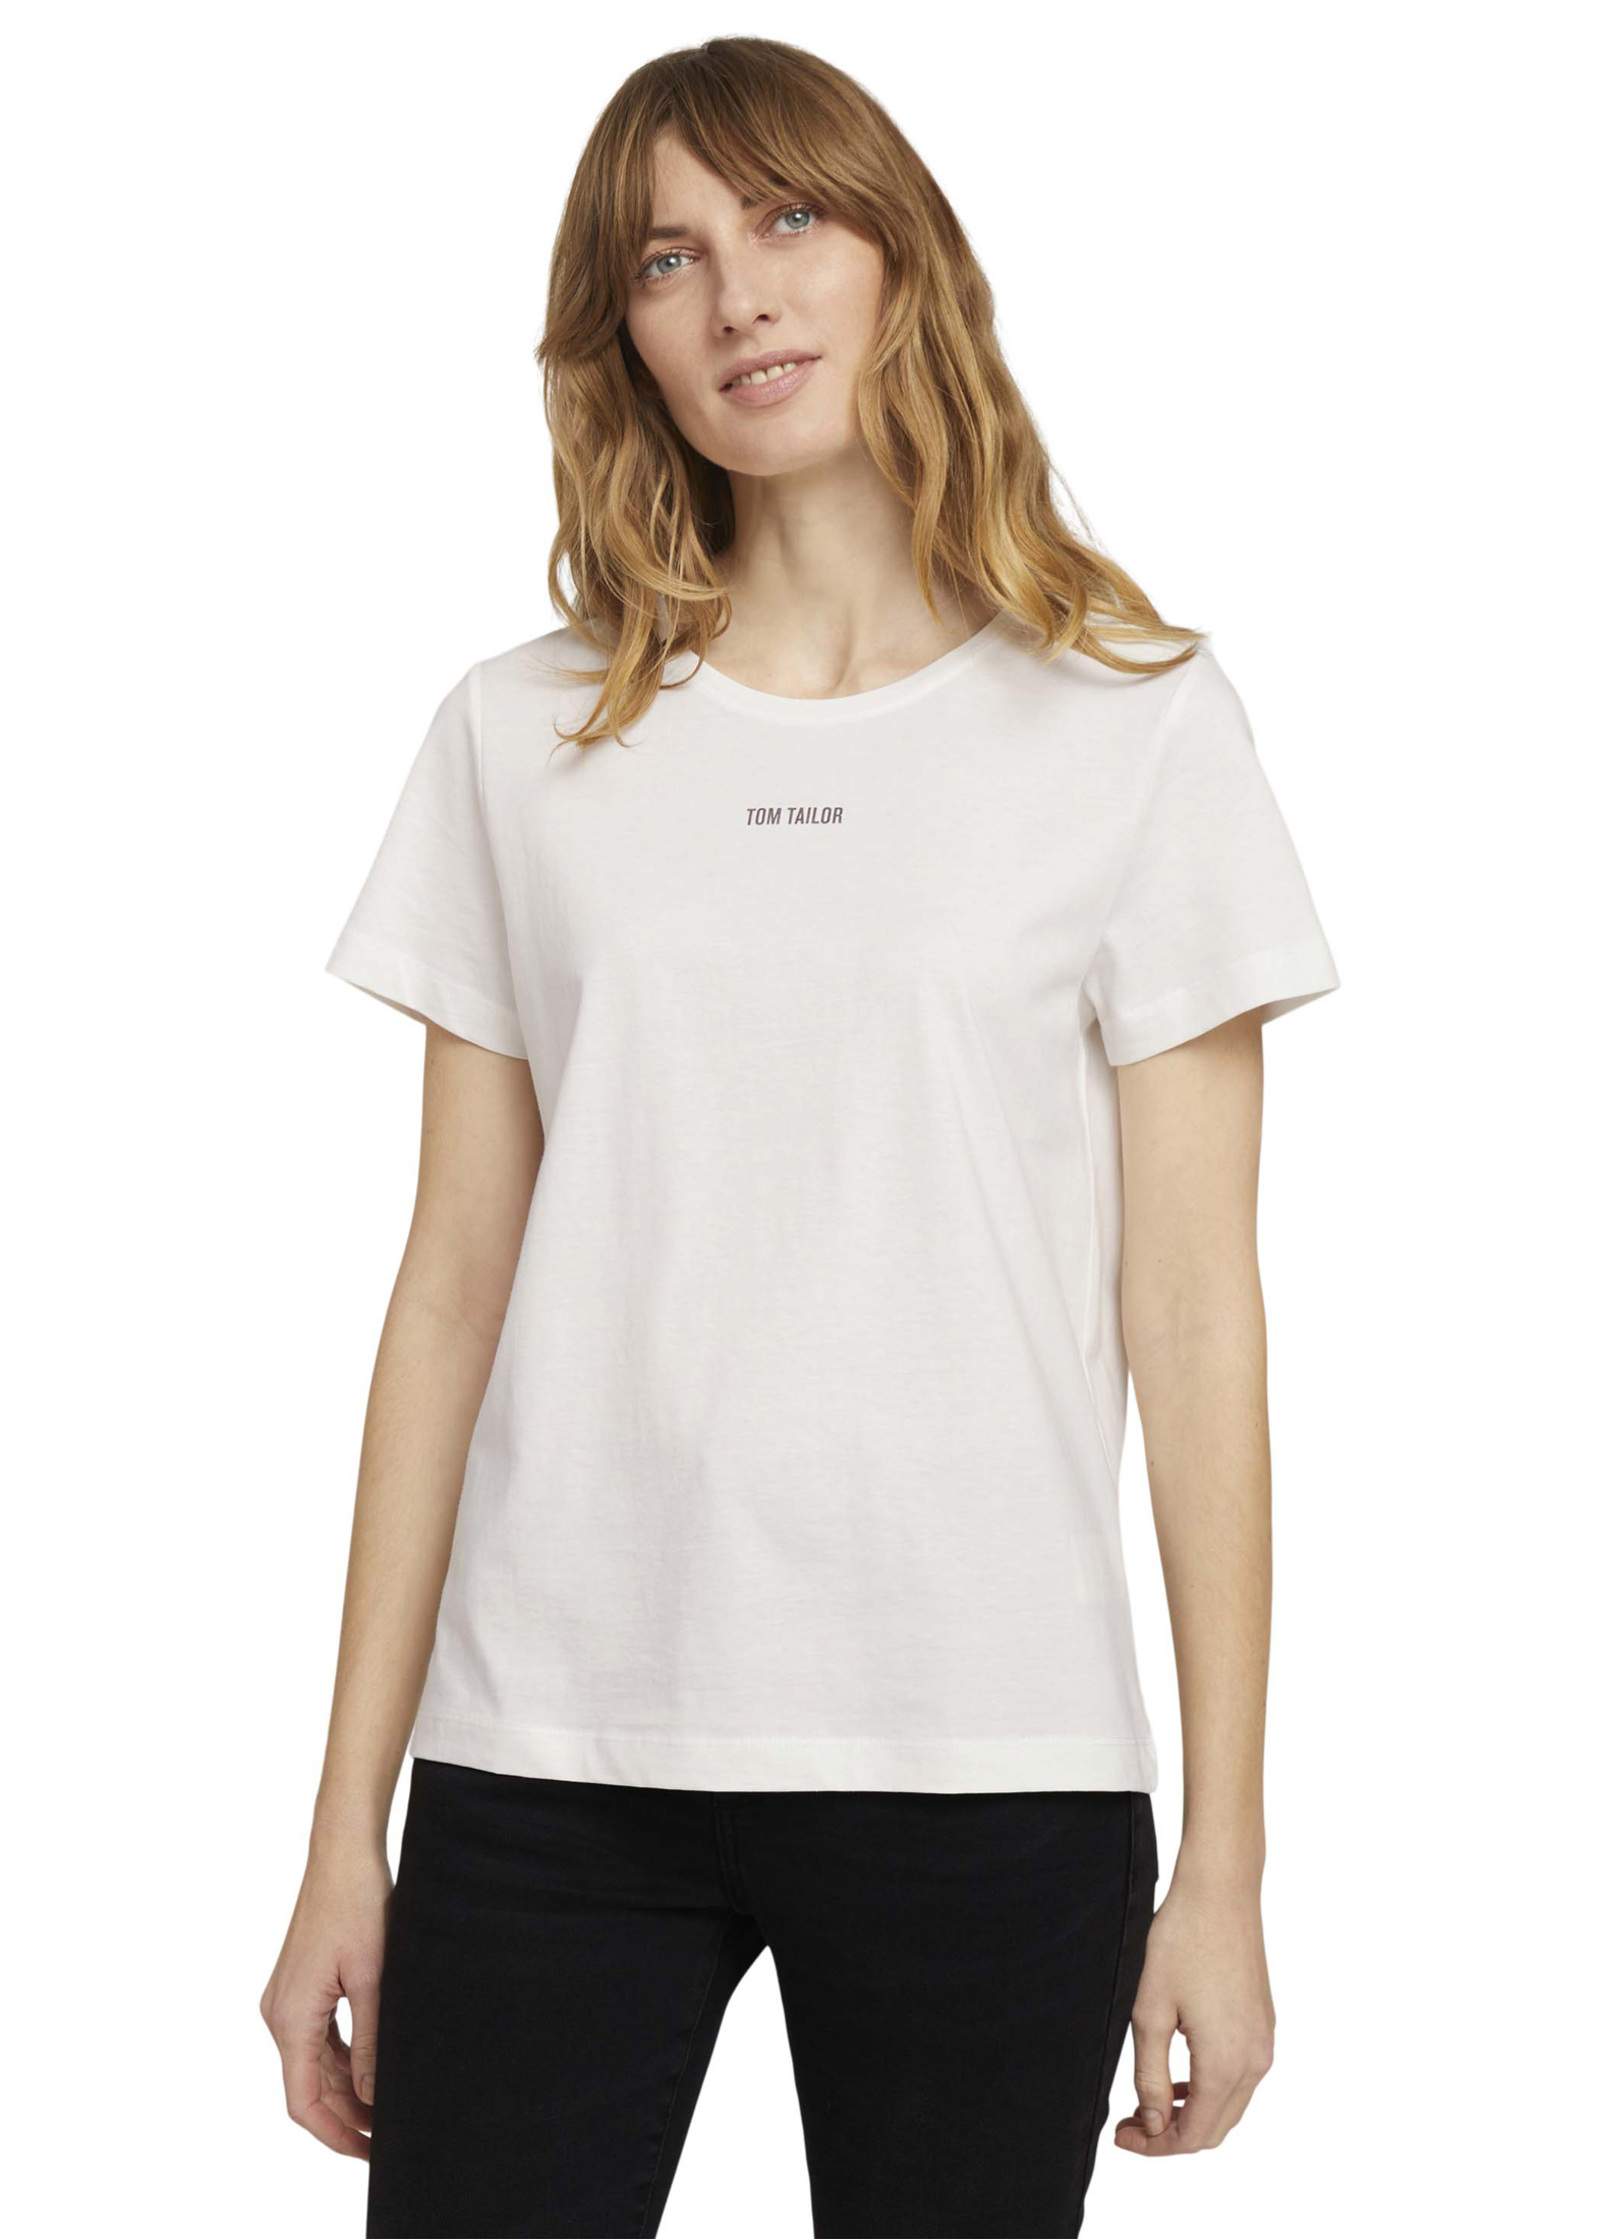 - Tom Tshirt Tailor® Whisper White C-neck Logo 3XL Size